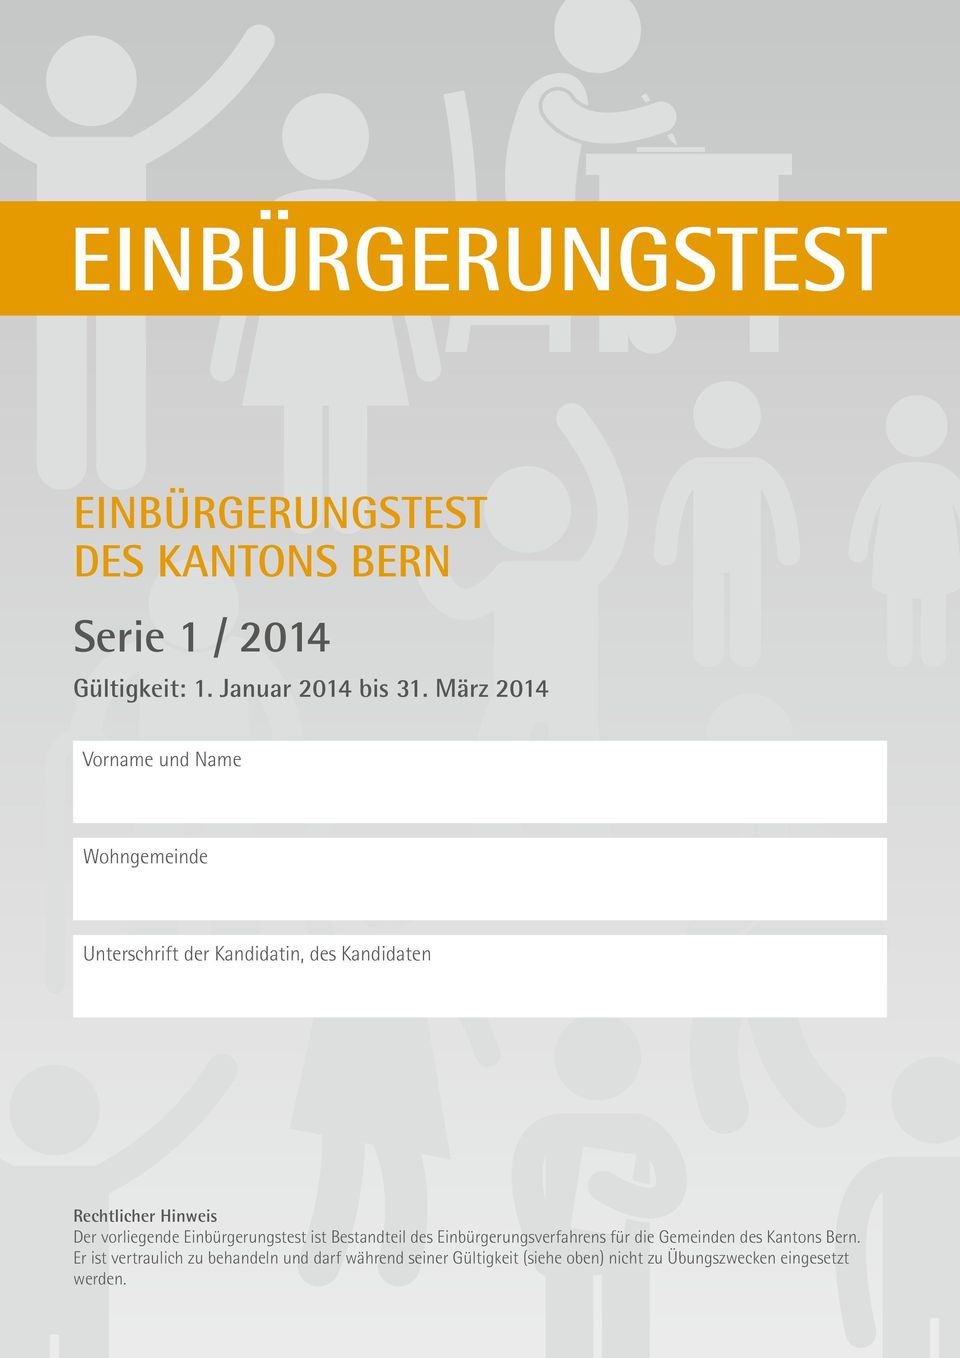 vorliegende Einbürgerungstest ist Bestandteil des Einbürgerungsverfahrens für die Gemeinden des Kantons Bern.